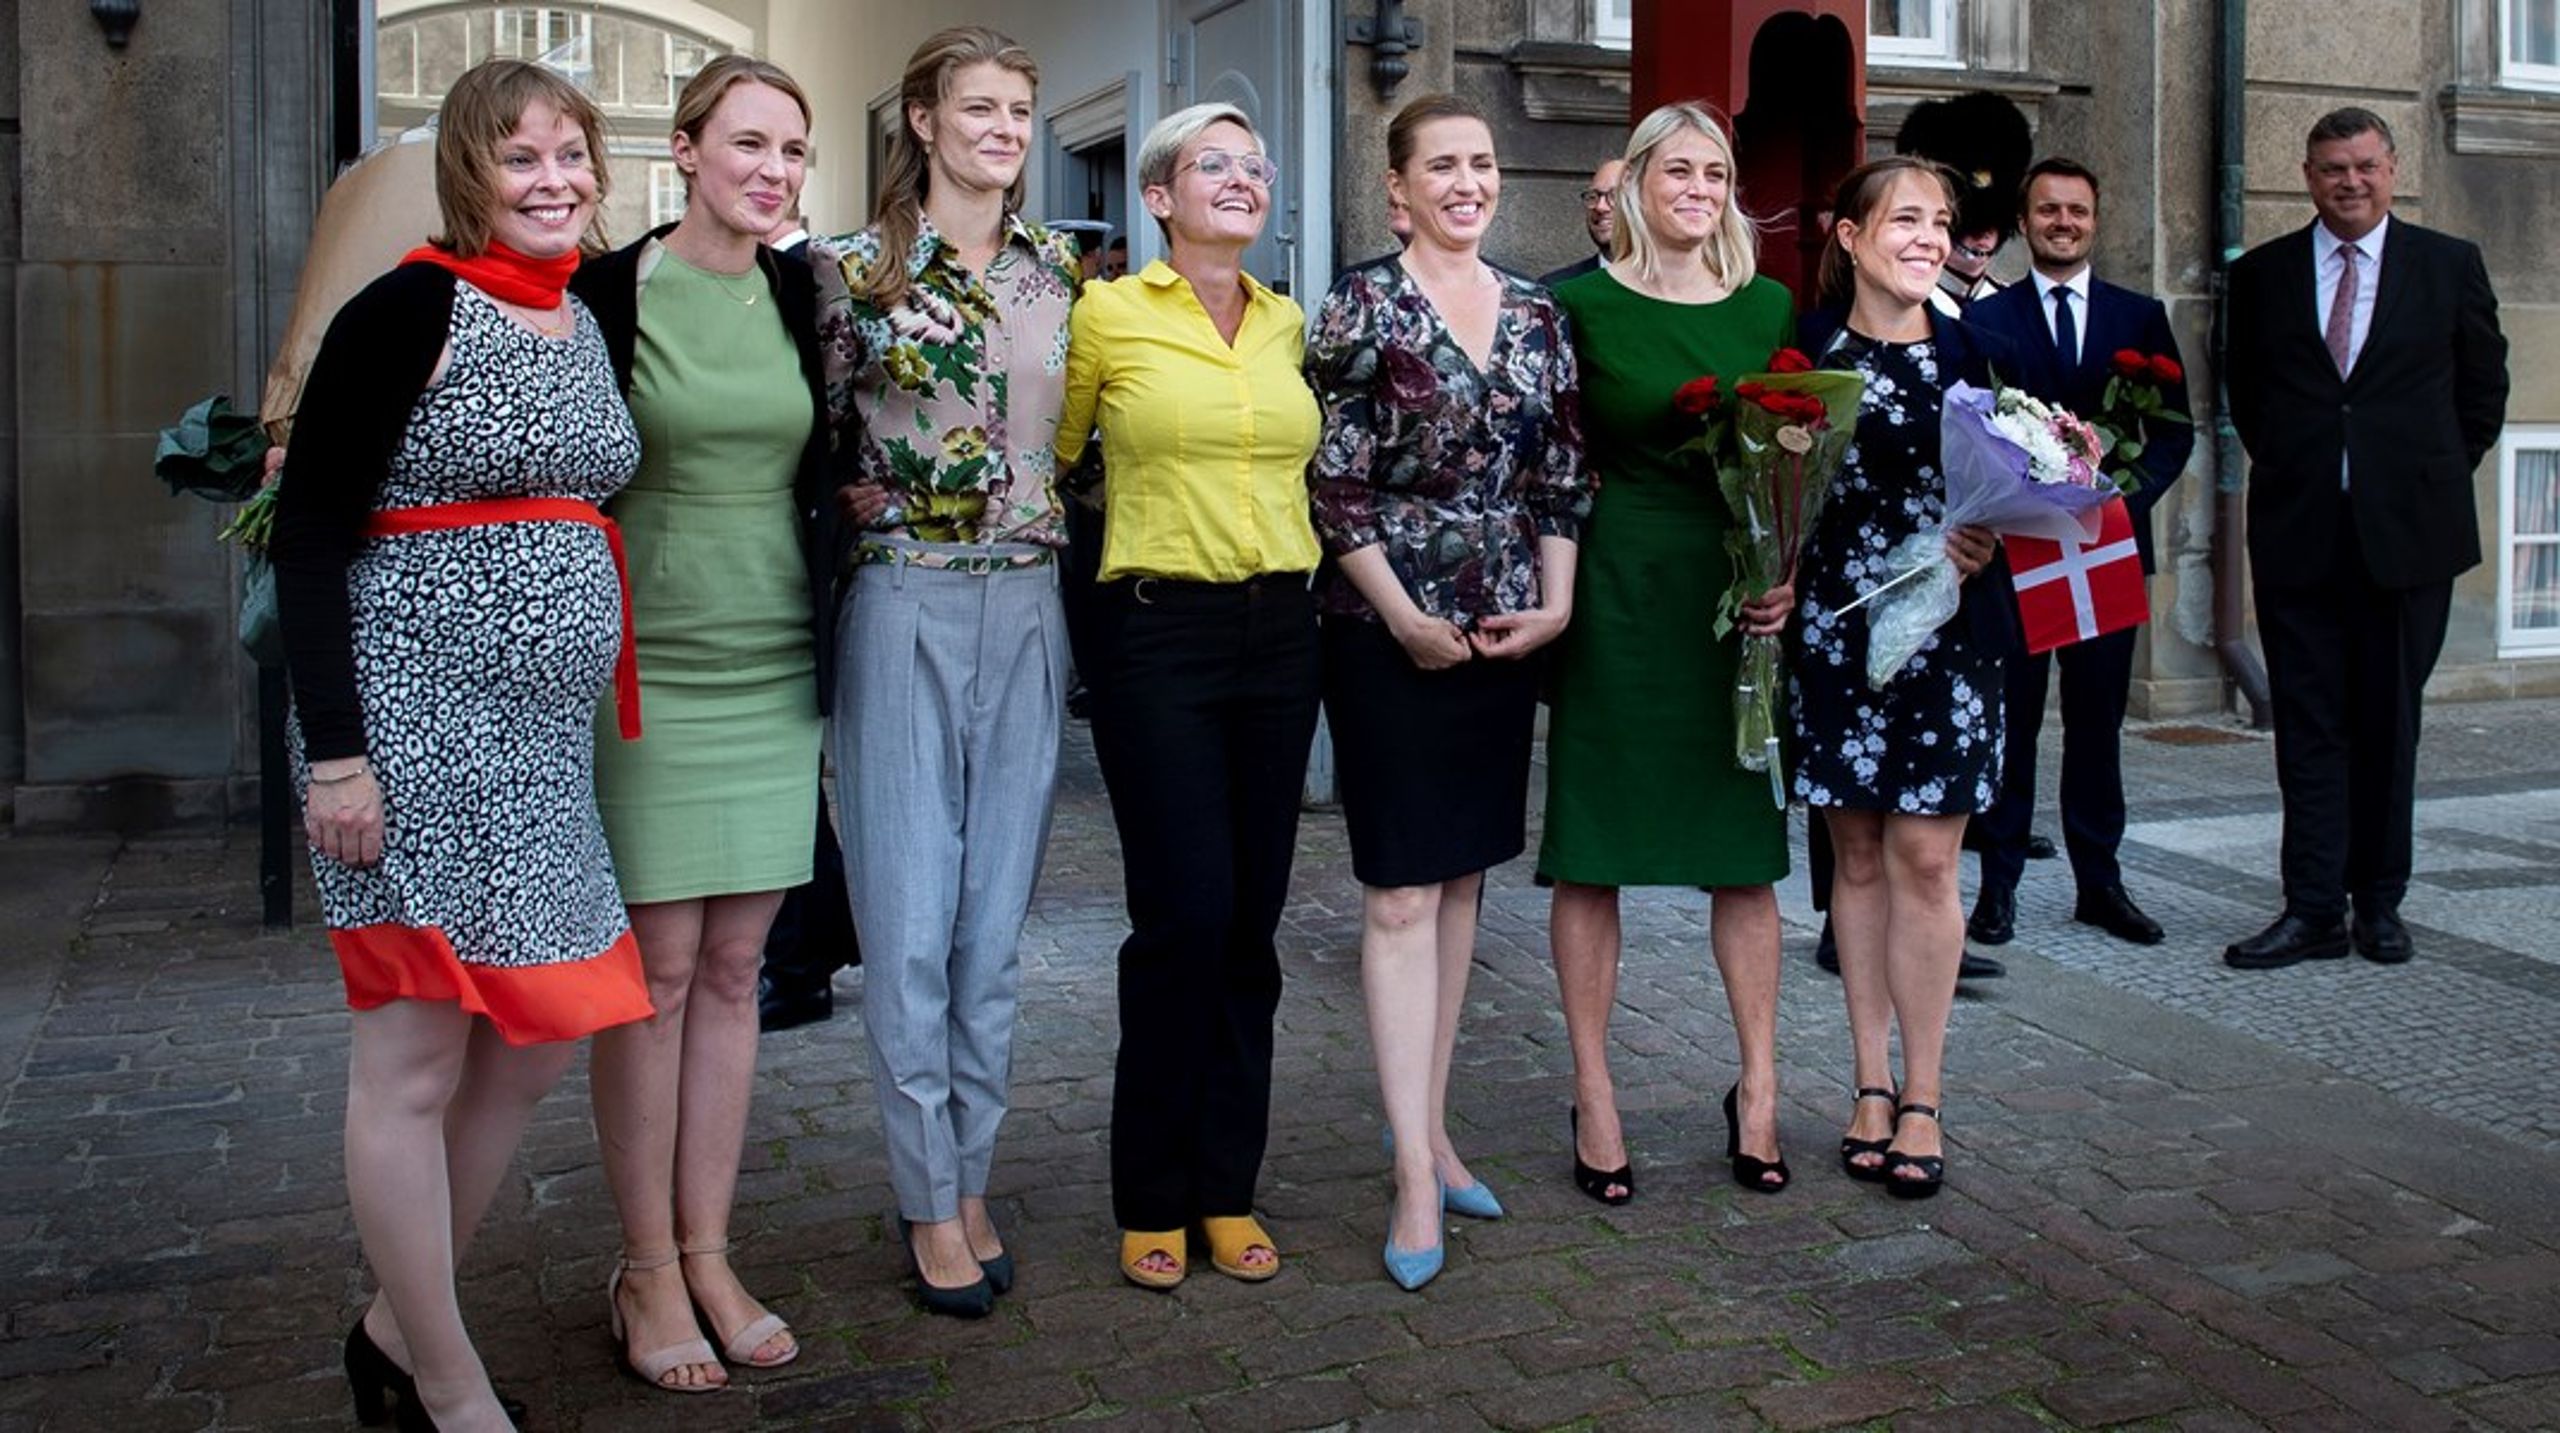 Miljøminister Lea Wermelin (nr to fra venstre) og resten af de kvindelige ministre, da Mette Frederiksen præsenterede sin regering i 2019.